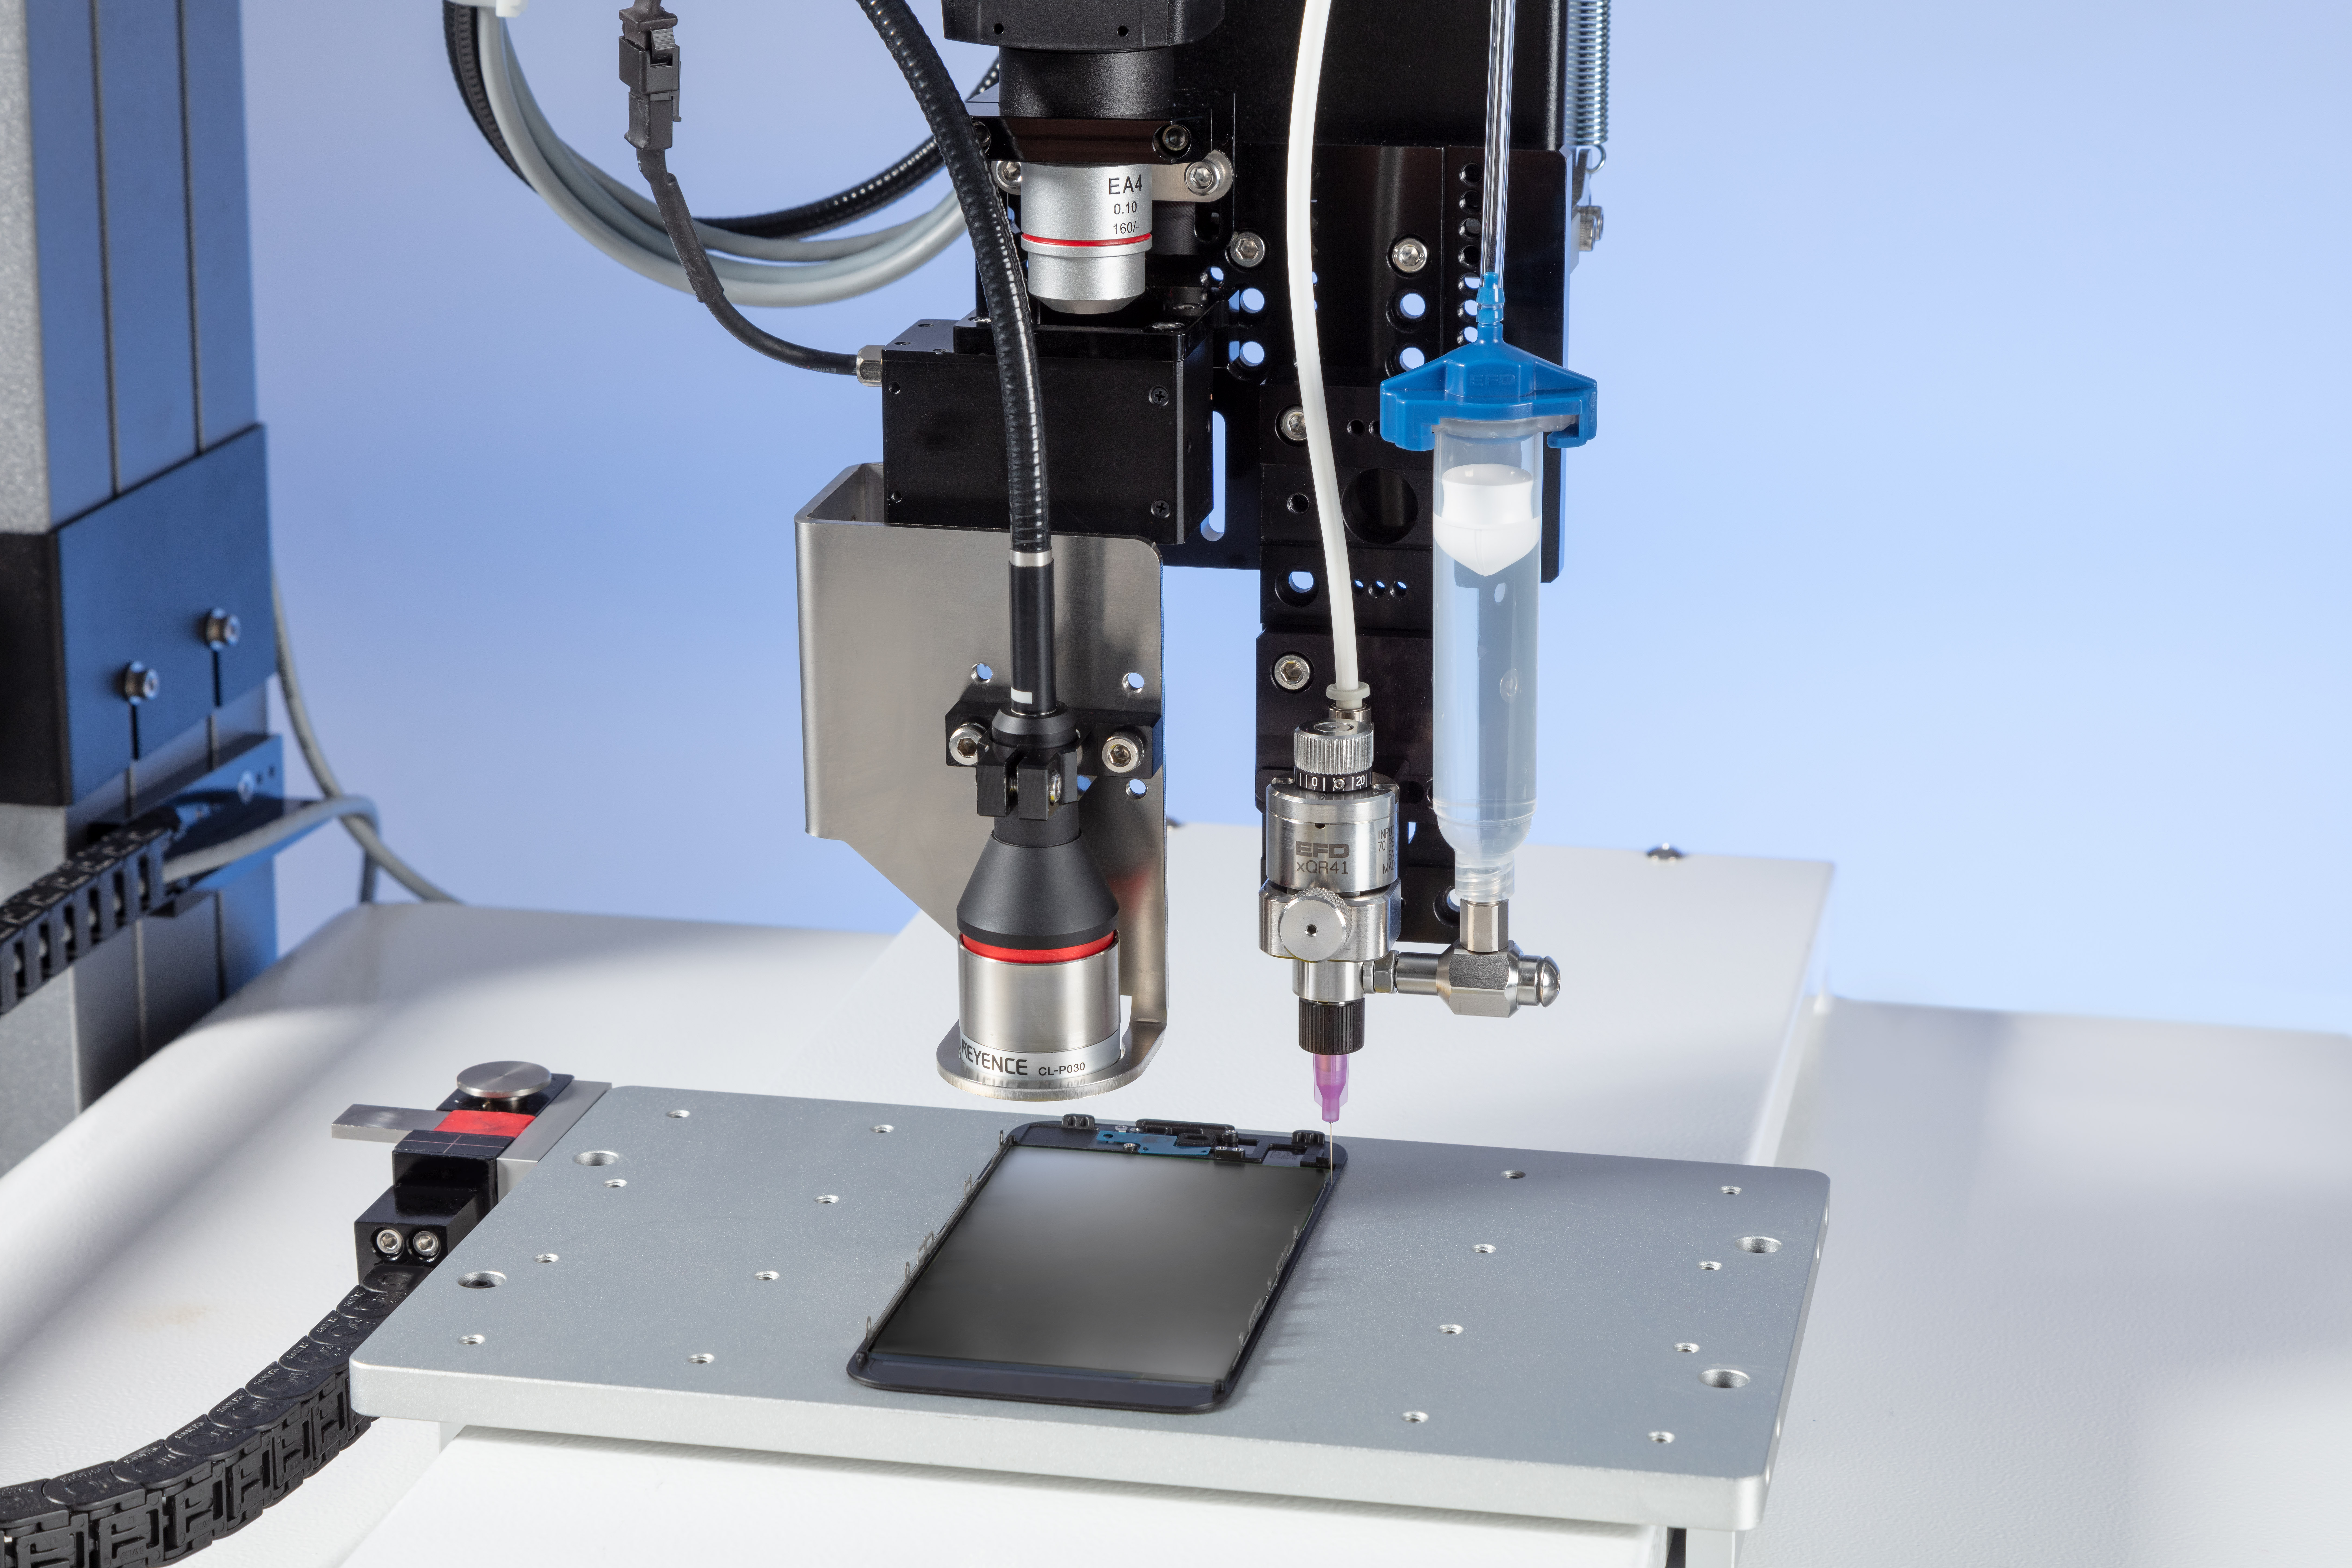 La inspección óptica automatizada de Nordson EFD verifica la ubicación y precisión del depósito de fluidos